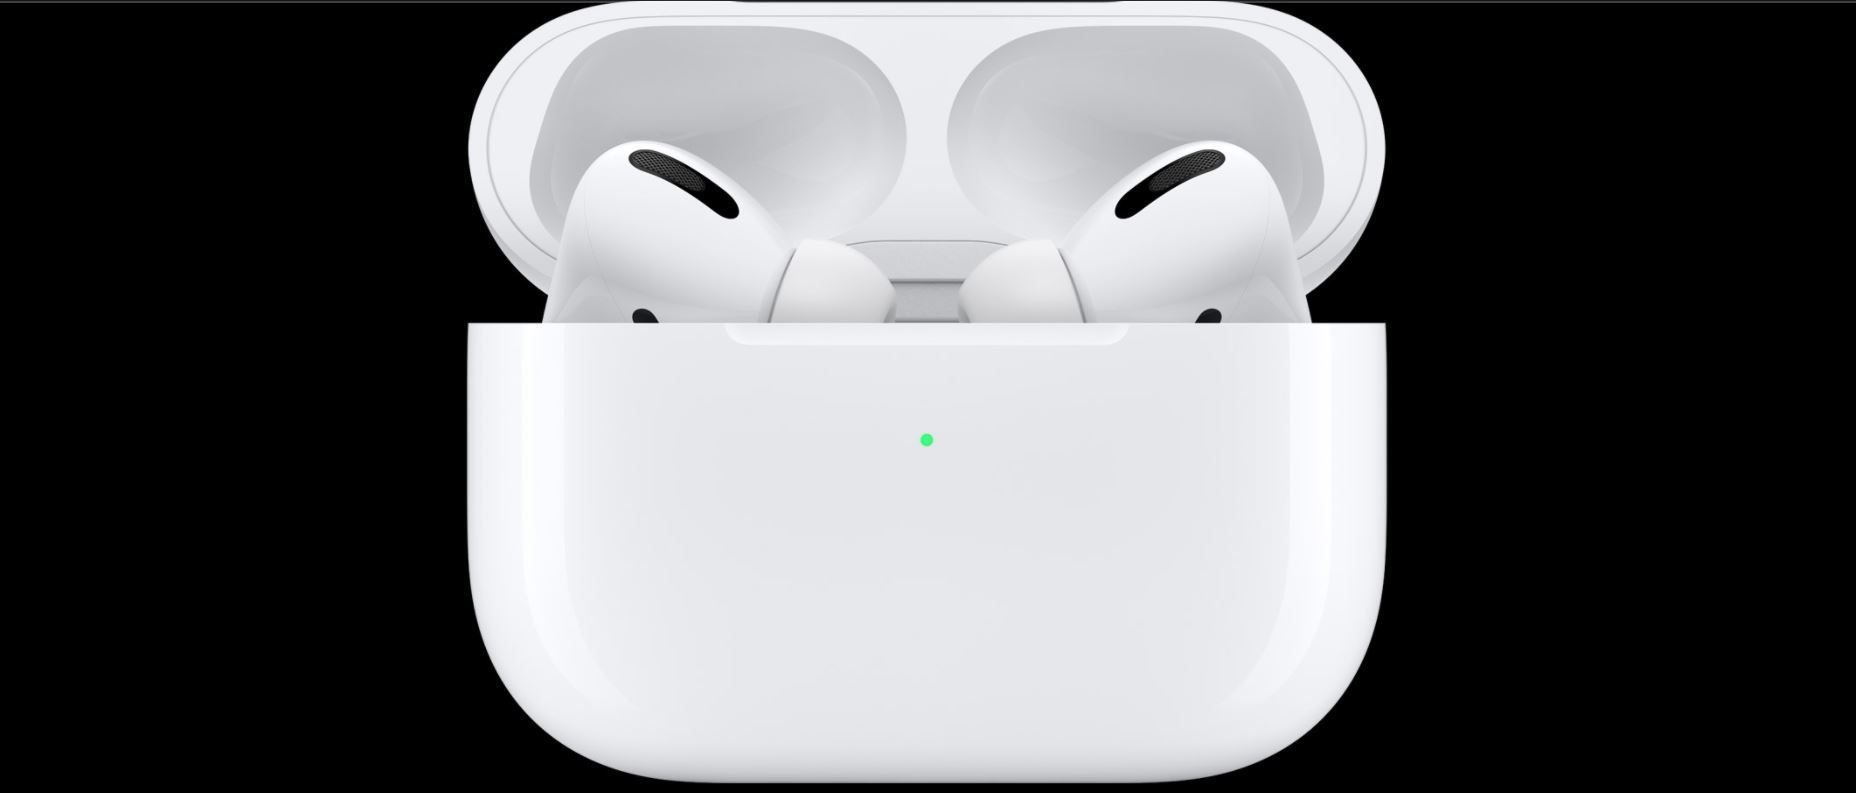  moderní sluchátka do uší apple airpods 3 generace Bluetooth připojení automatické párování s apple zařízeními dotykové ovládání odolná vodě a potu krásný zvuk 